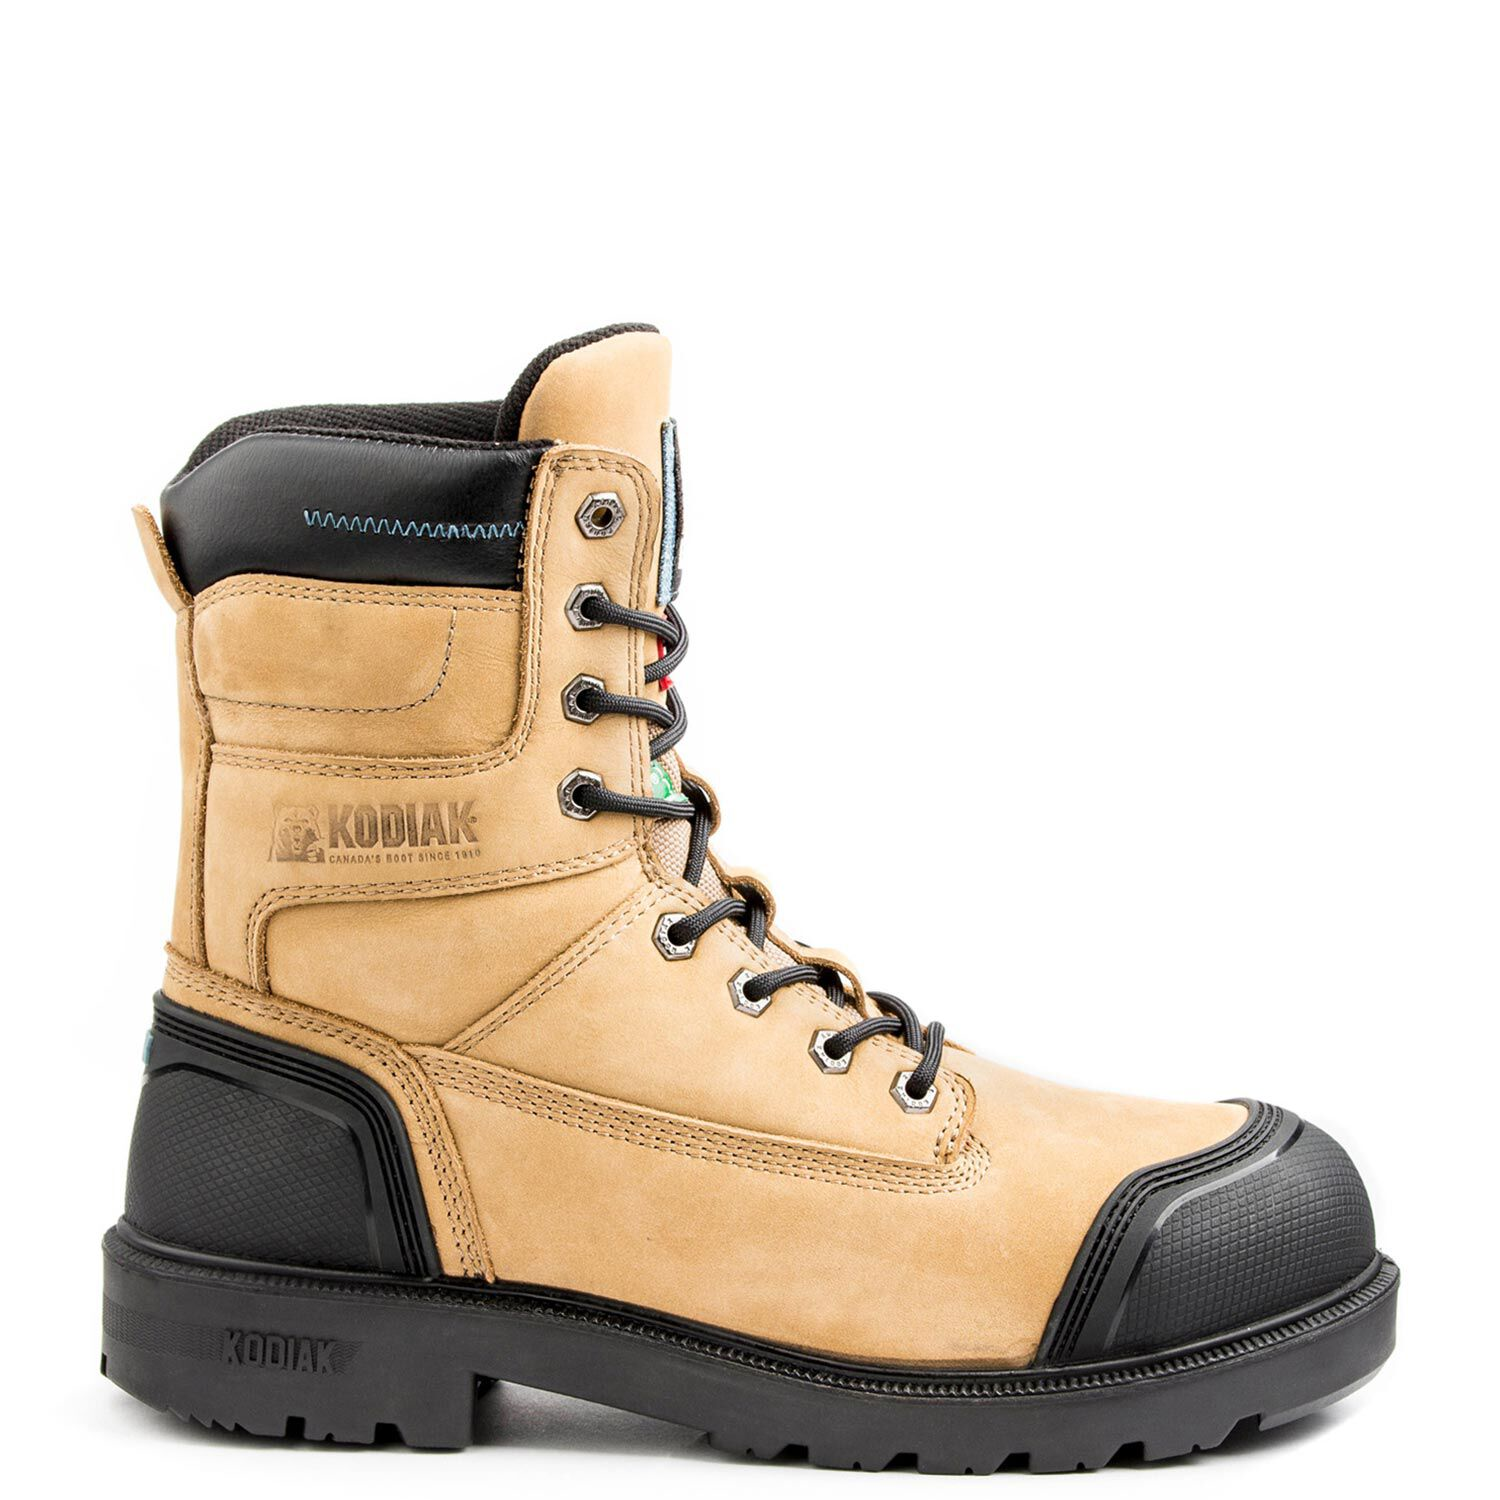 Kodiak Men's 8-Inch Axton Composite Toe Waterproof Industrial Boot 